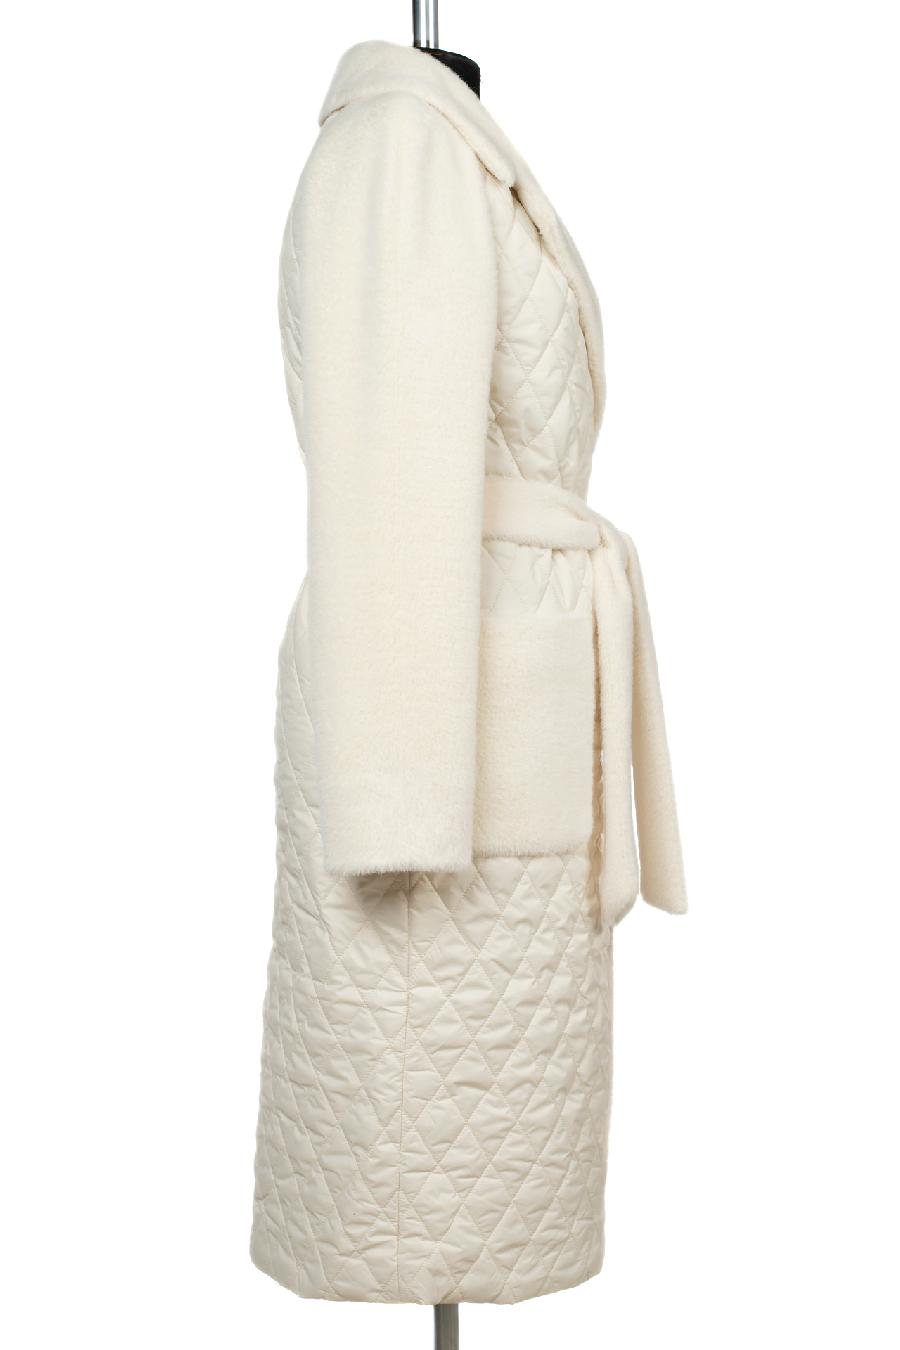 01-11535 Пальто женское демисезонное (пояс) ворса/плащевка белый